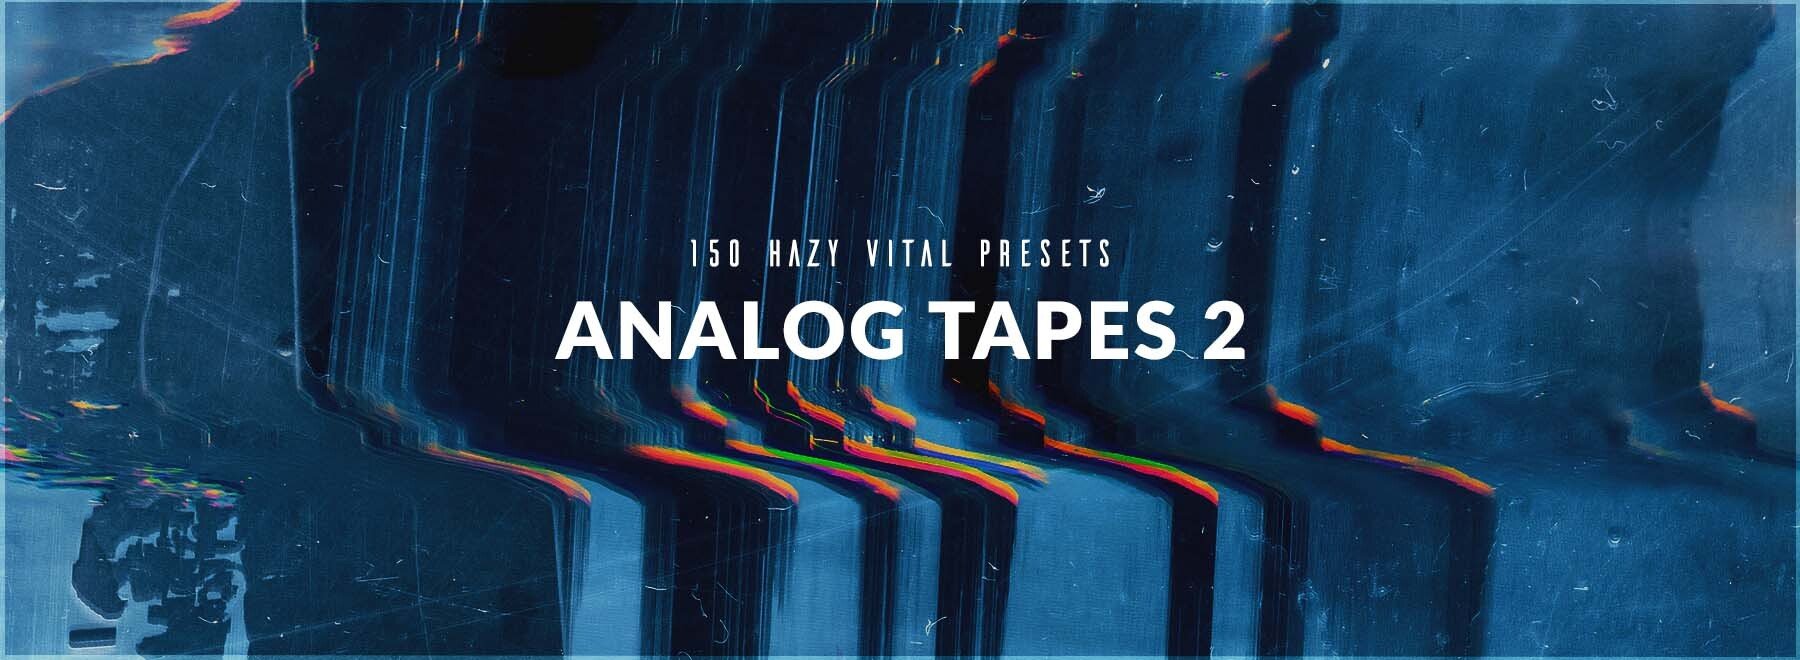 LP24 - Analog Tapes 2